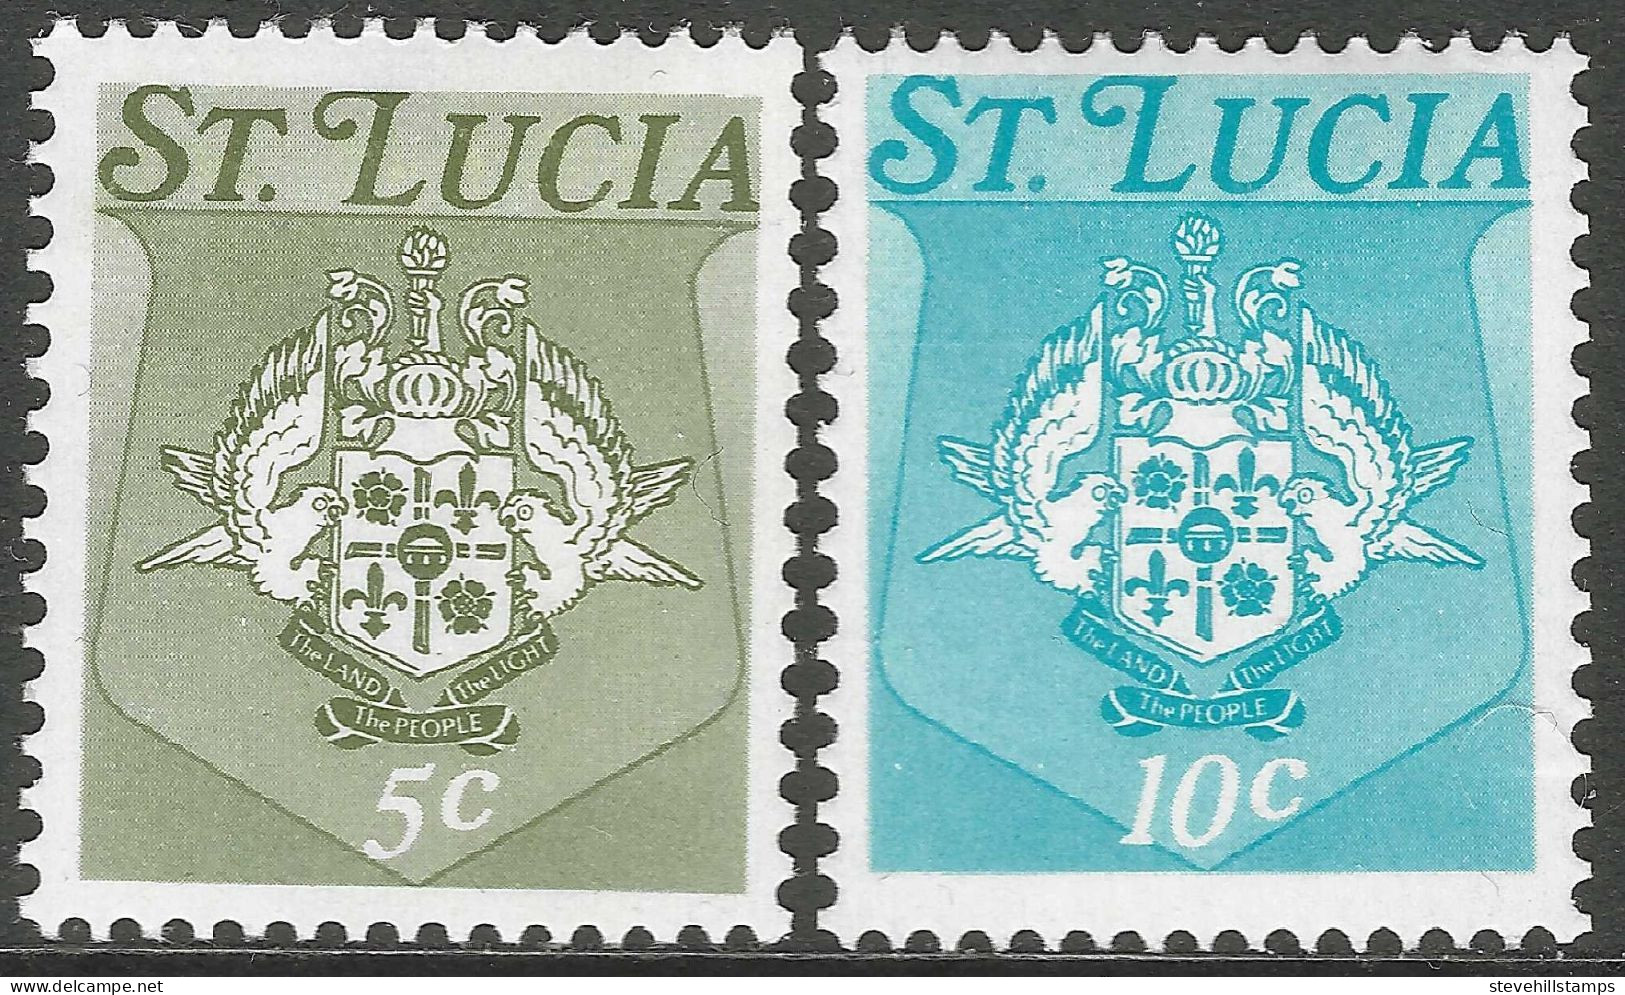 St Lucia. 1973 Coat Of Arms. 5c, 10c Blue MH. SG 349A, 350A M3165 - Ste Lucie (...-1978)